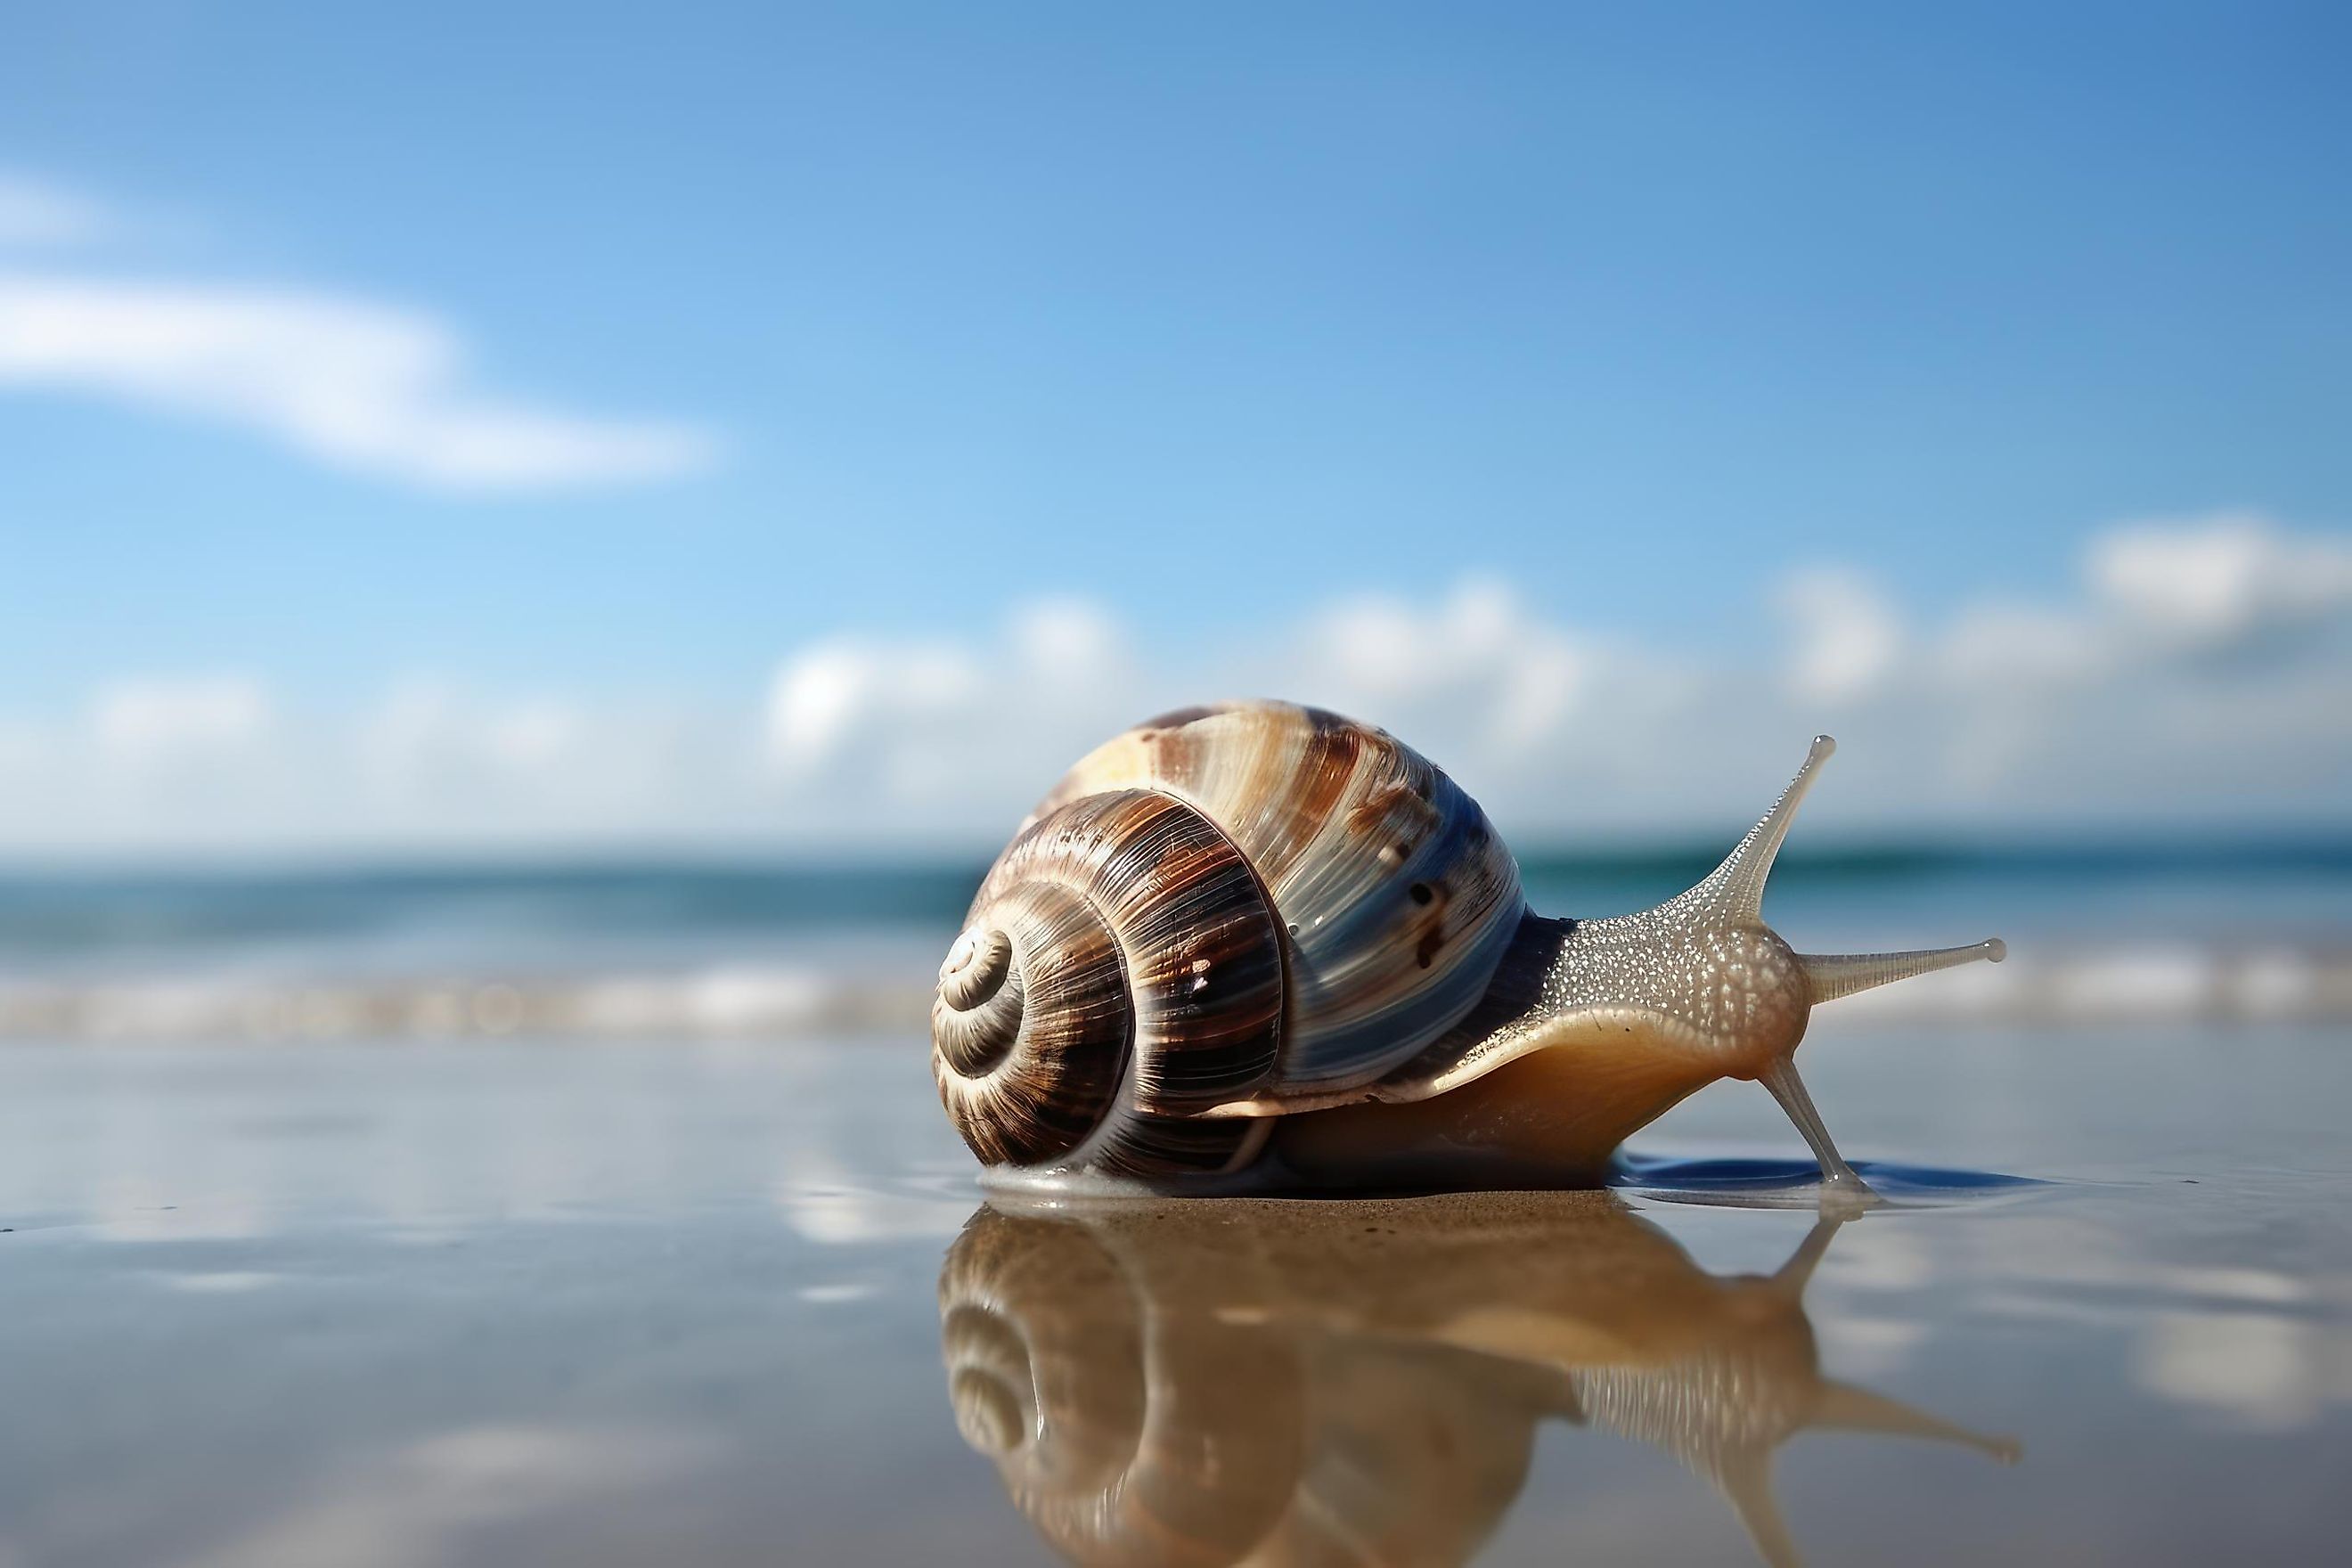 A sea snail on the beach.